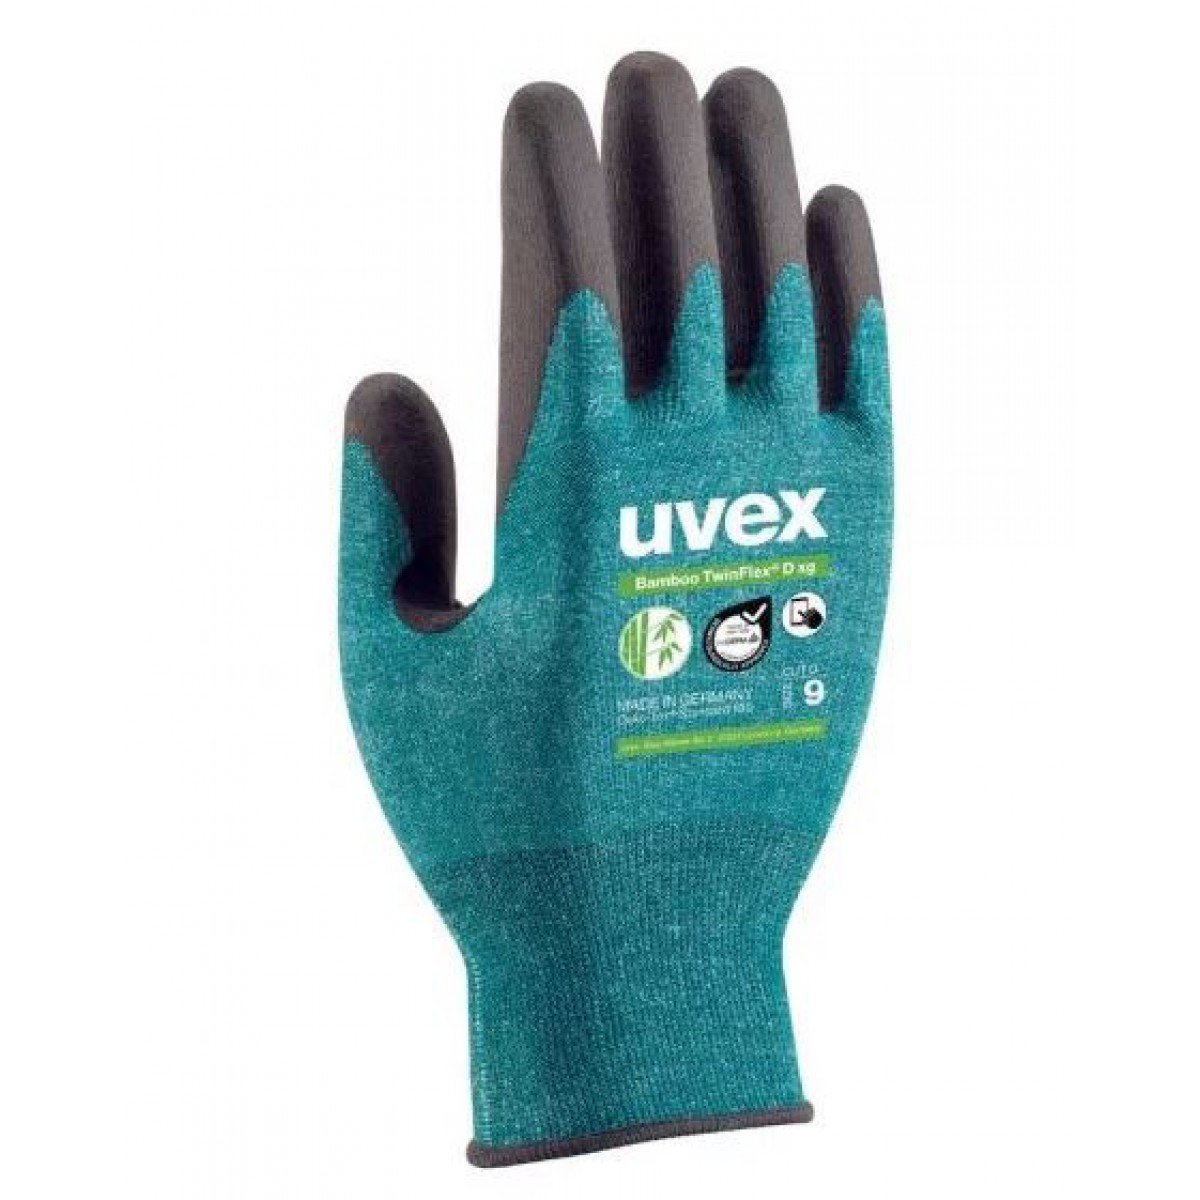 Bamboo TwinFlex® D xg Glove